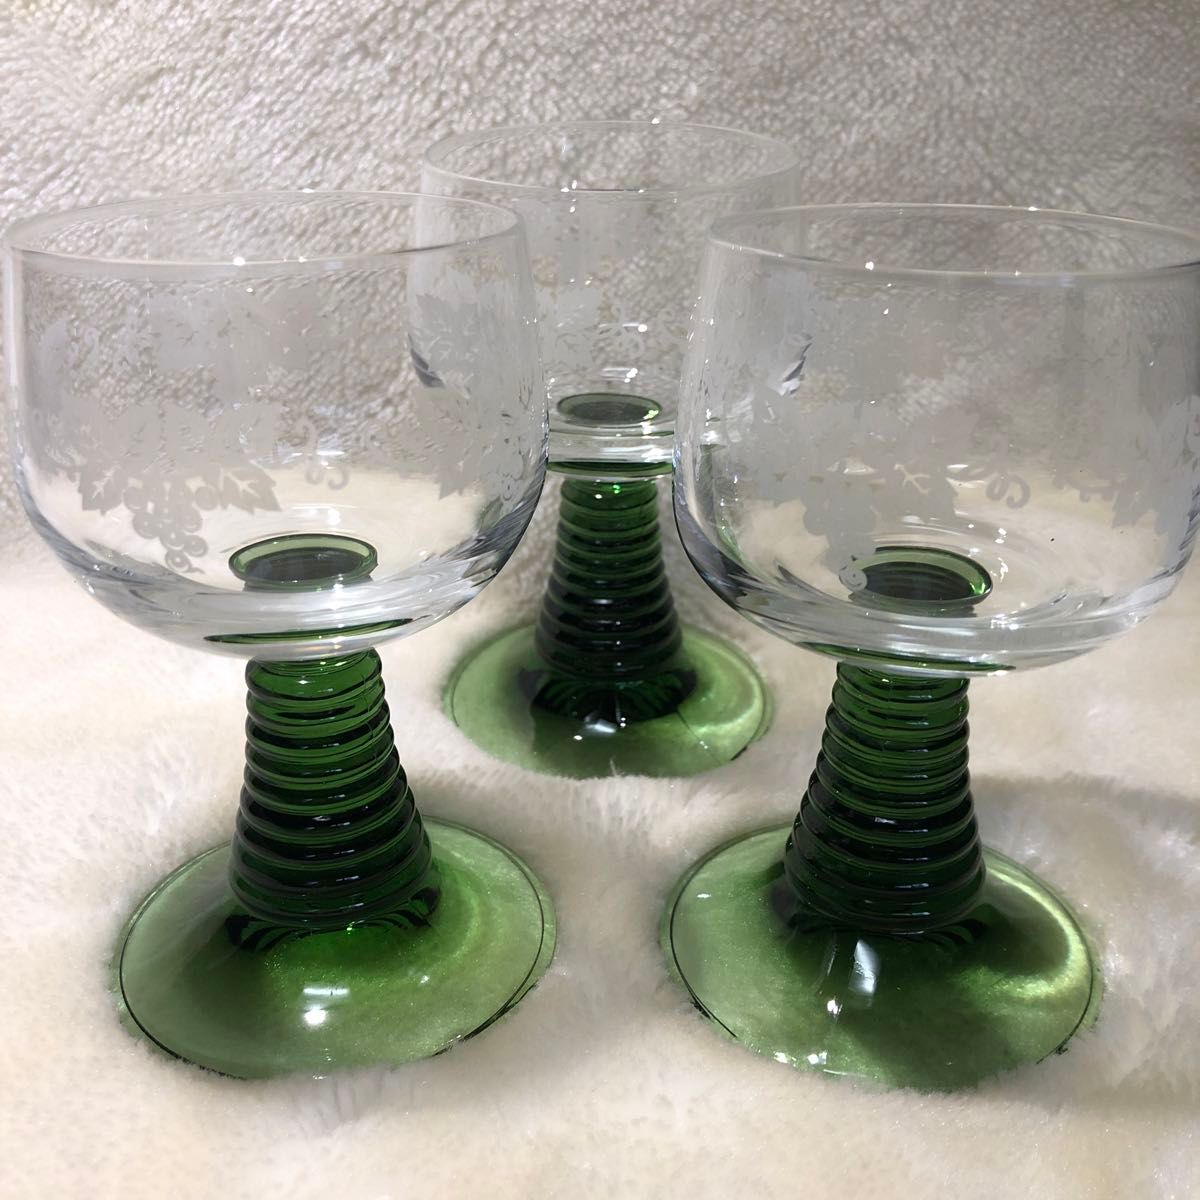 ワイングラス3個　ガラス工芸品。透明ガラスにブドウの絵柄を施術。スタンド部はグリーンで土台の安定感のある逸品。